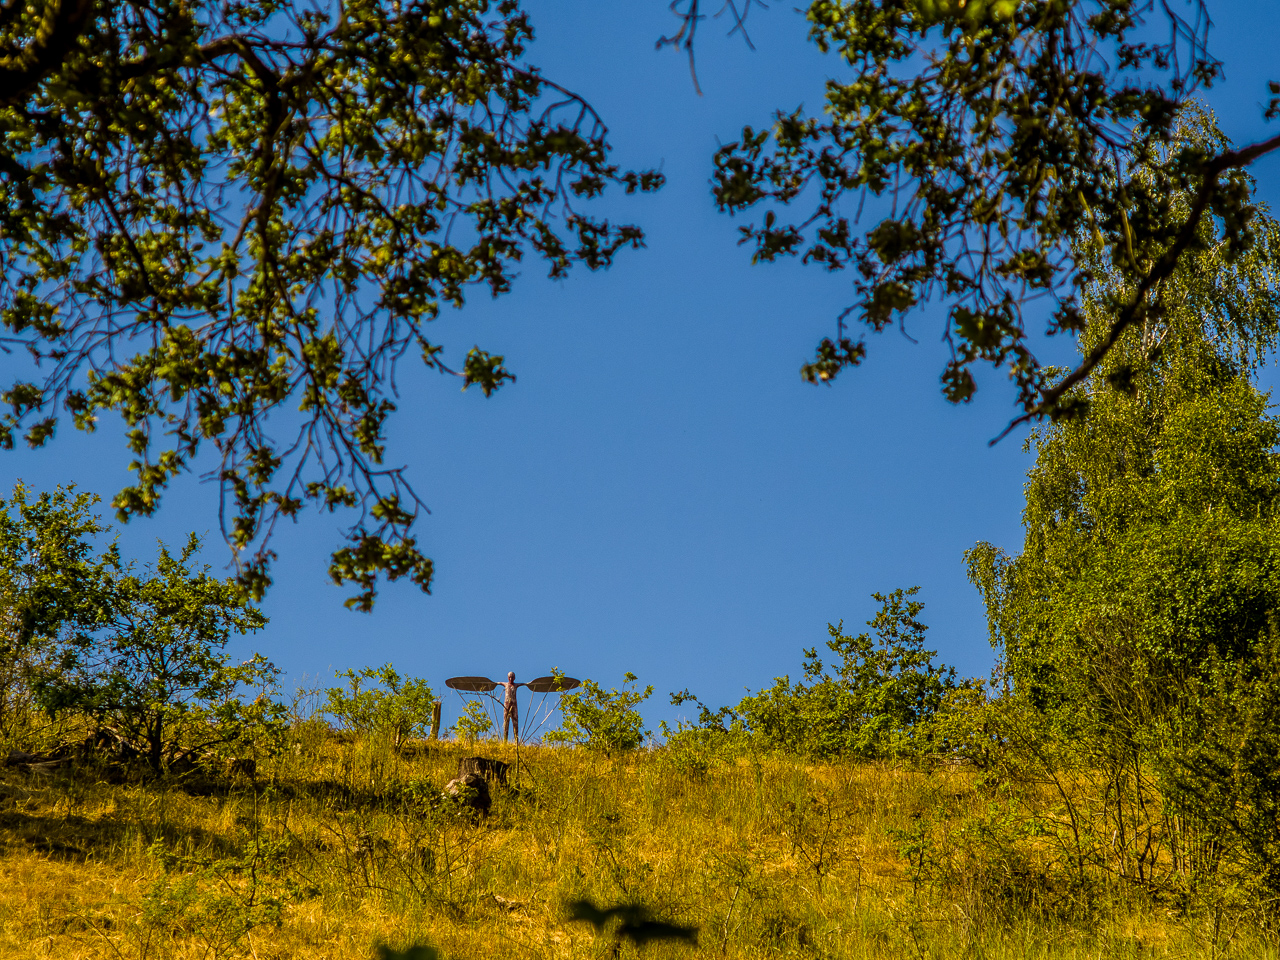 Ein mager bewachsener Hang von unten gegen blauen Himmel. Oben auf dem Berg steht eine Skulptur eines Menschen mit ausgebreiteten Armen, die wie Flügel aussehen.